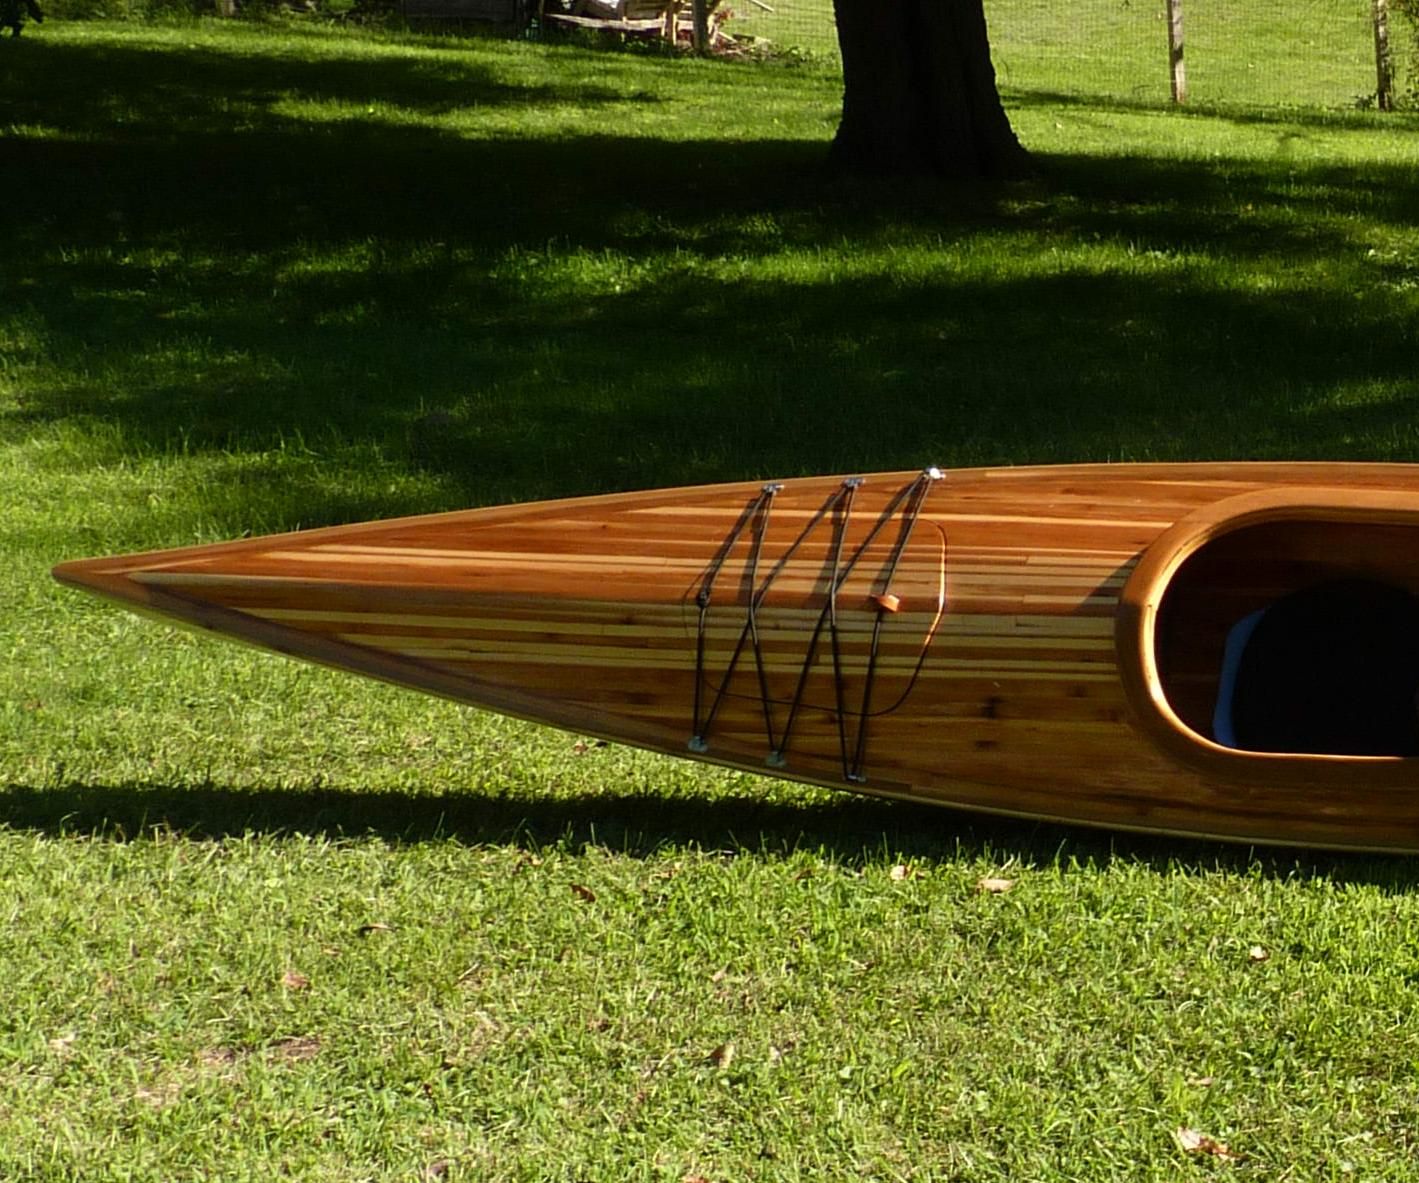 Building a Cedar Strip Kayak